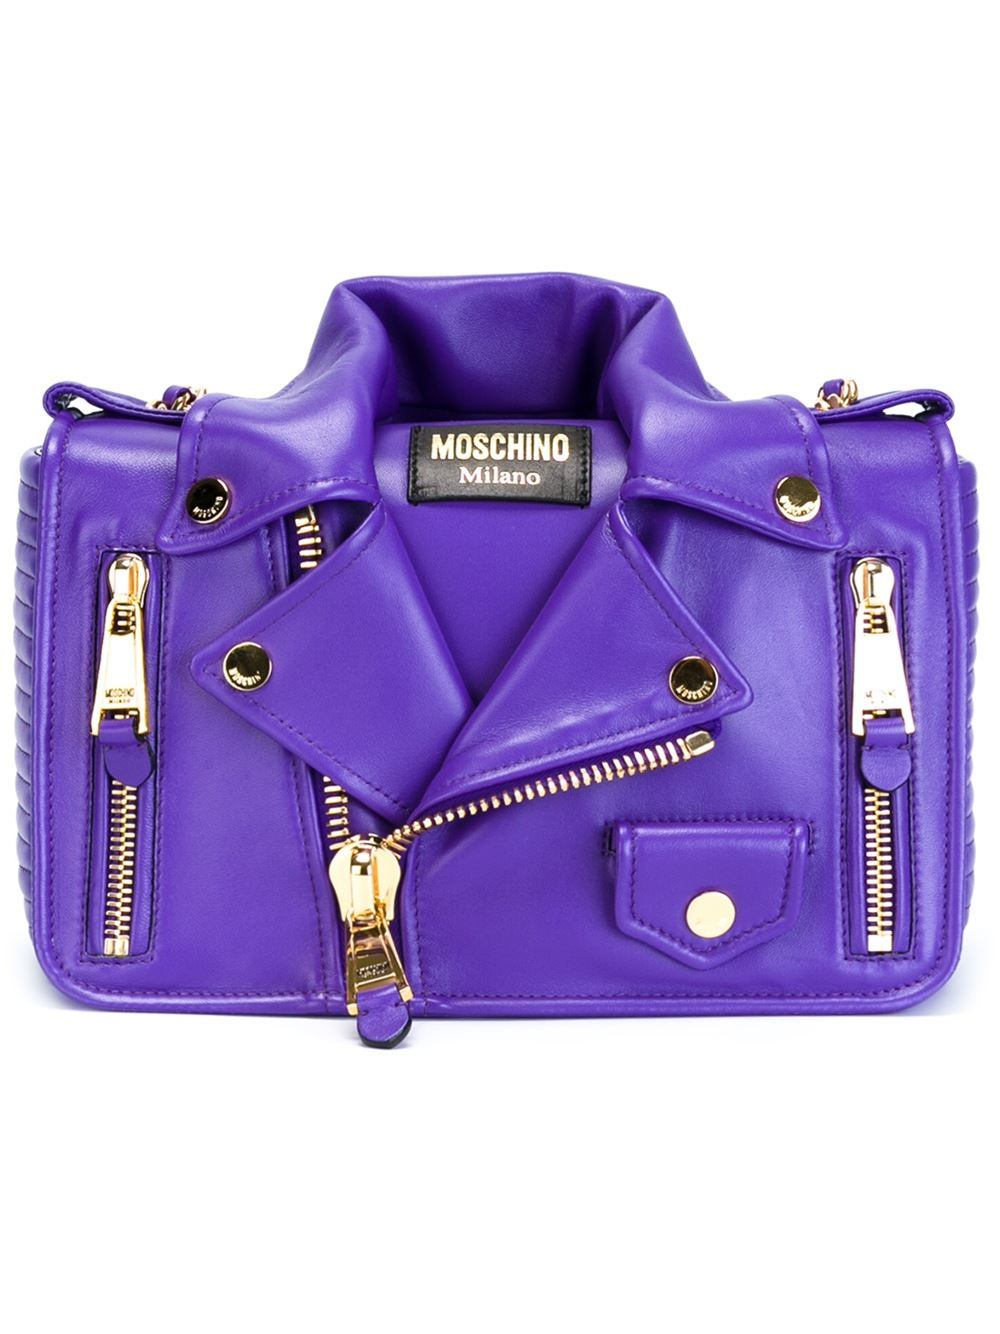 Moschino Biker Cross-Body Bag in Pink & Purple (Purple) - Lyst